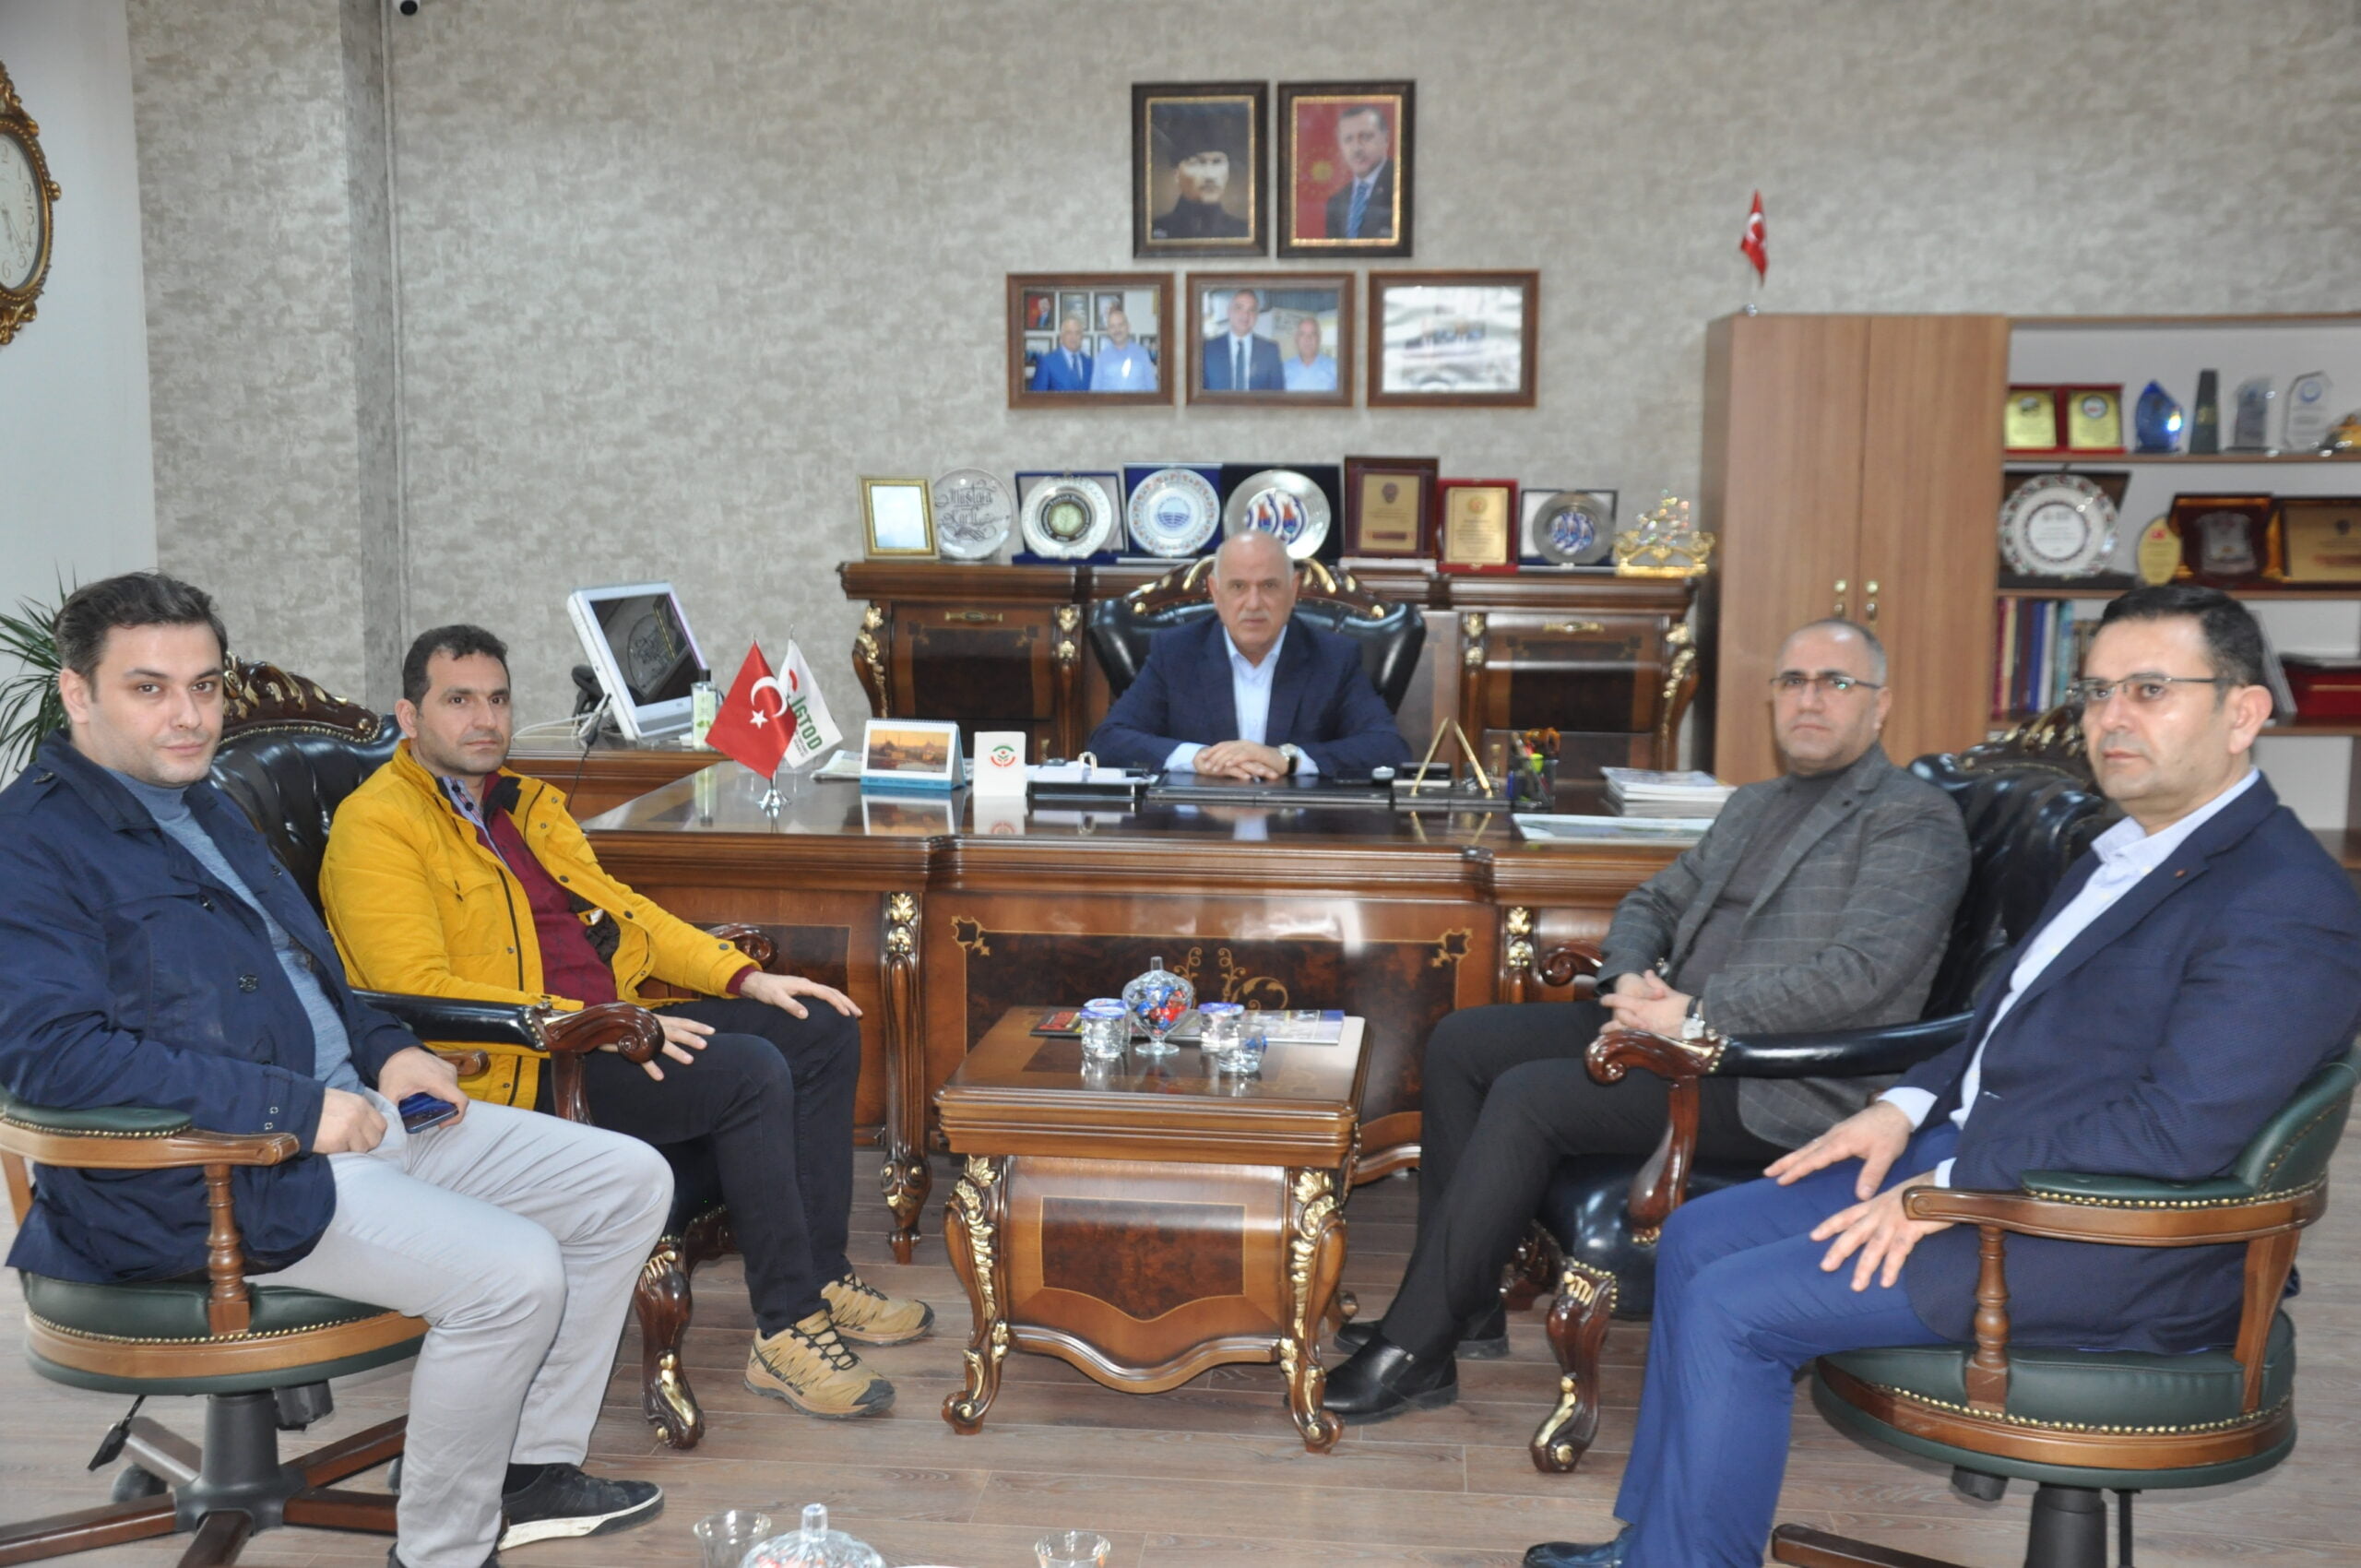 Malatya Yeşilyurt Belediyesinden Başkan Mustafa Karlı’ya ZiyaretMalatya Yeşilyurt Belediyesinden Başkan Mustafa Karlı’ya Ziyaret